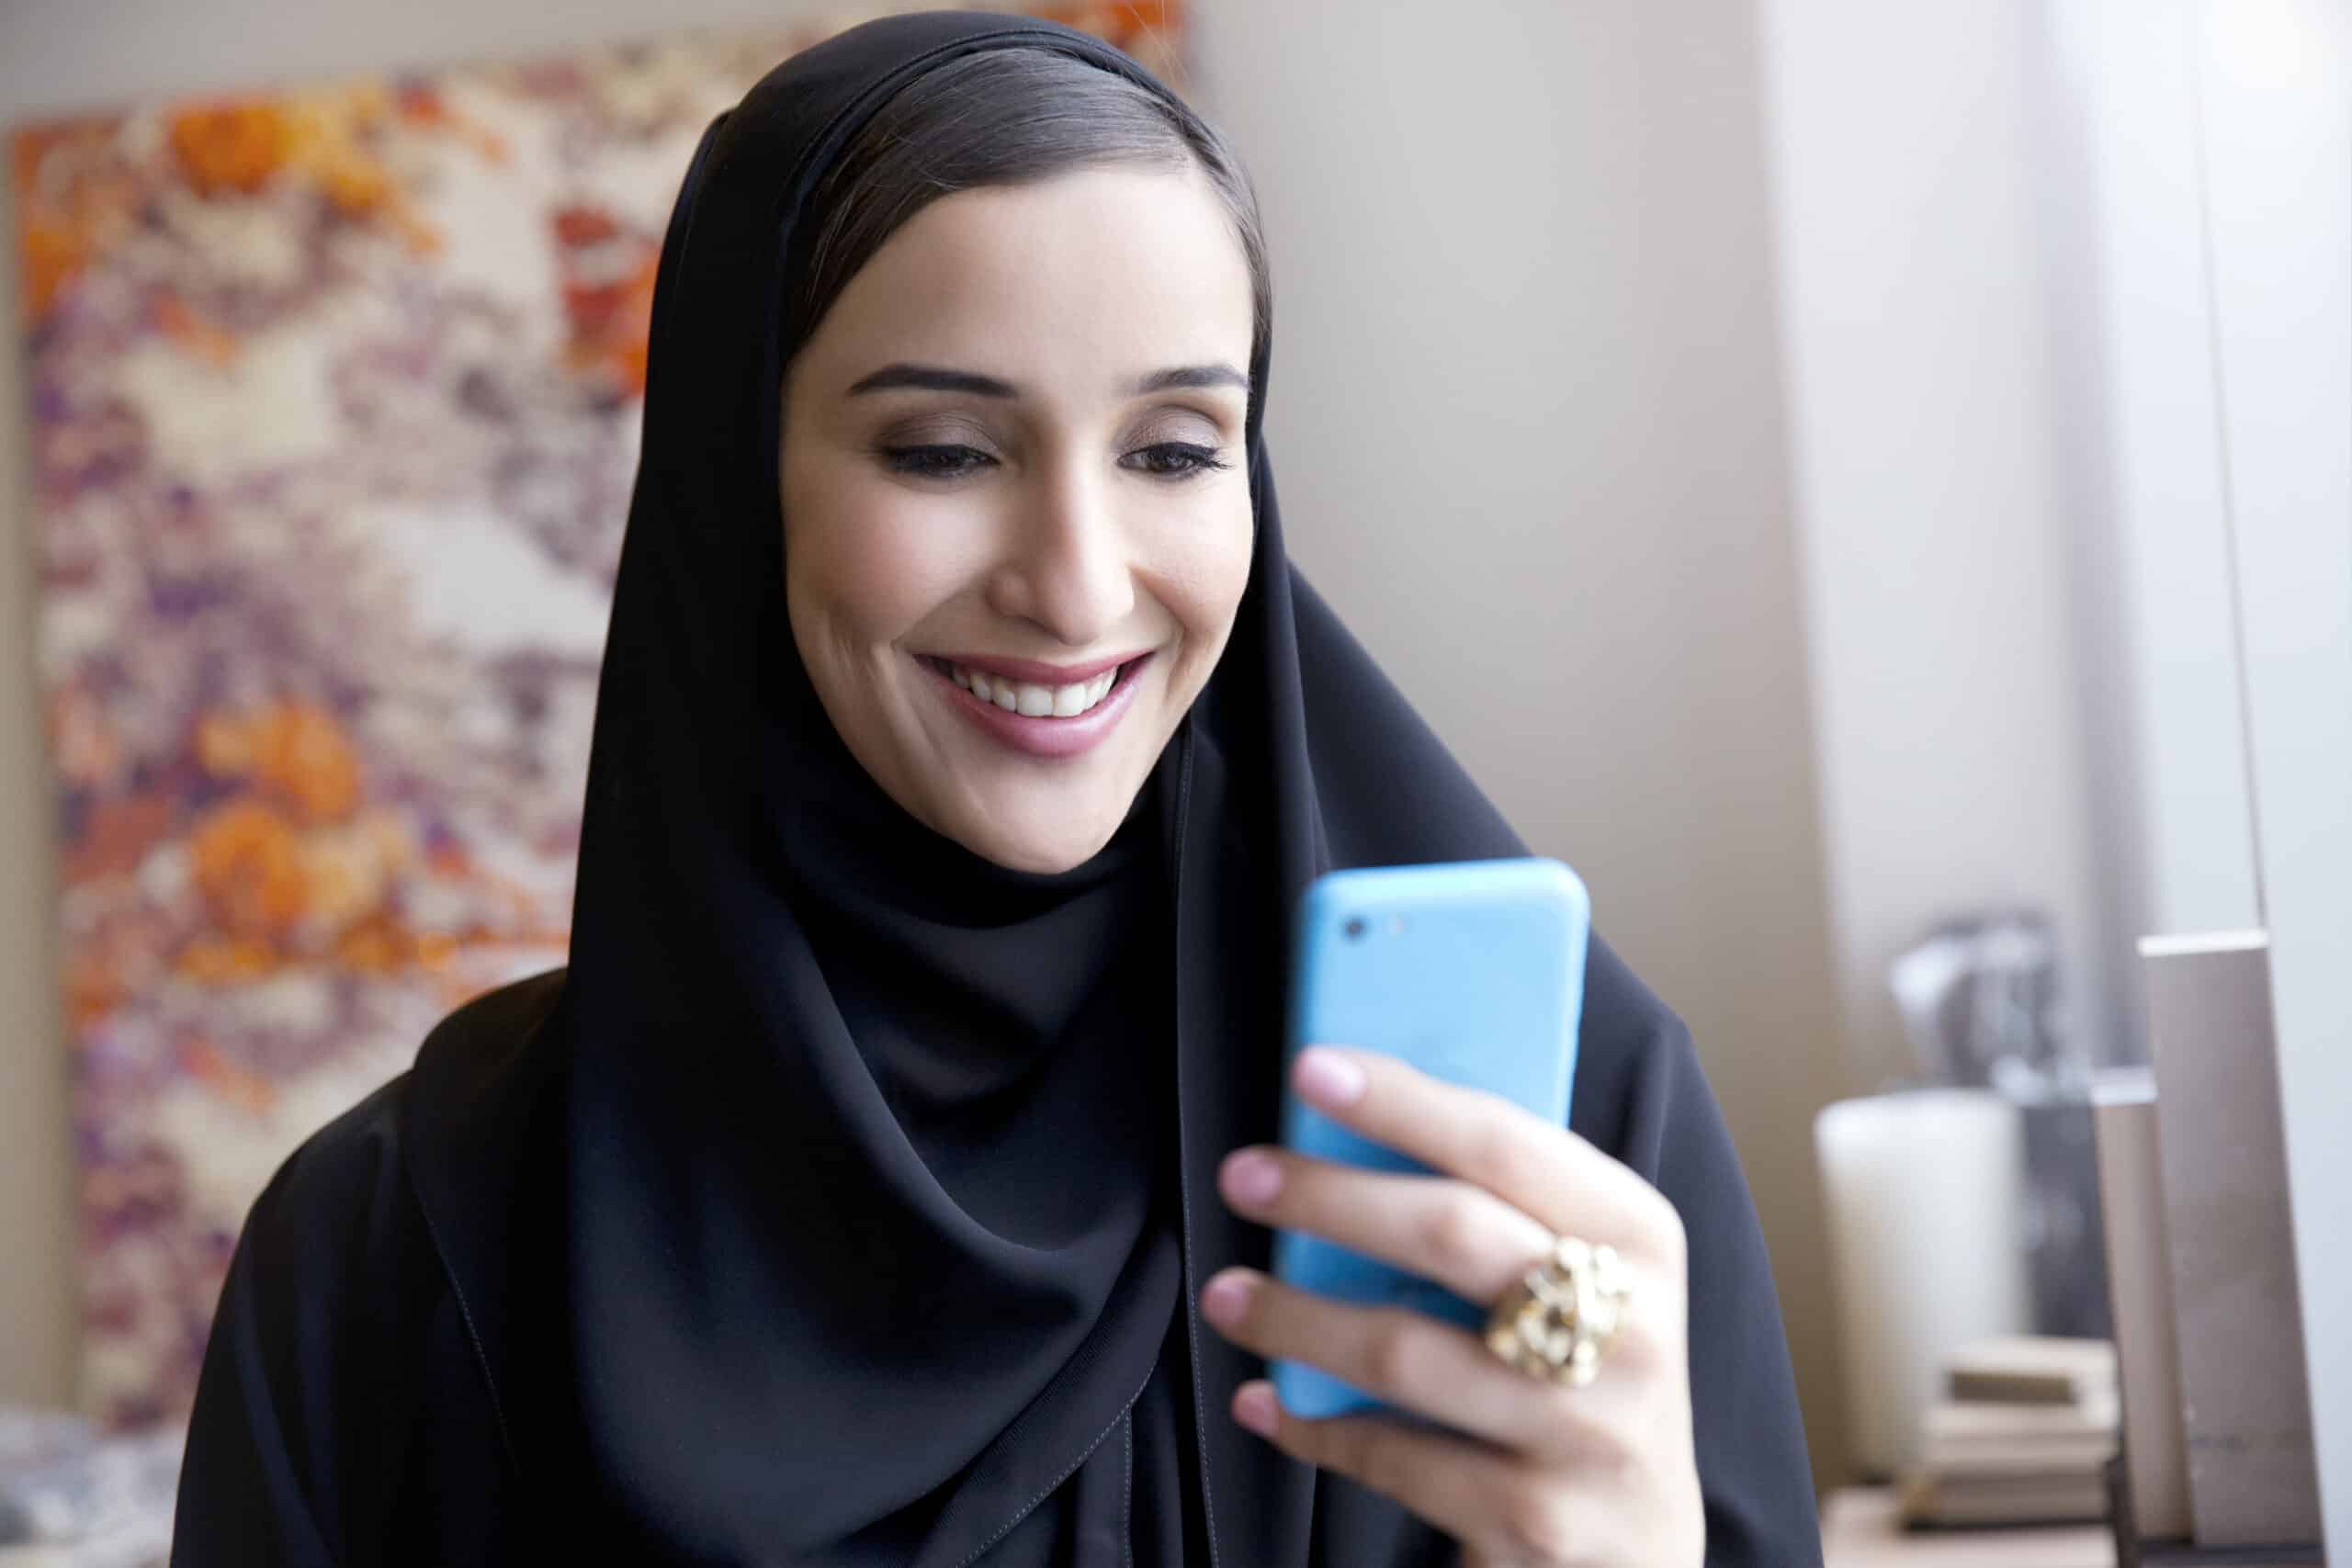 Eine Frau im Hijab lächelt fröhlich, während sie in einem gut beleuchteten Raum mit floralen Kunstwerken im Hintergrund auf ihr blaues Smartphone schaut. © Fotografie Tomas Rodriguez